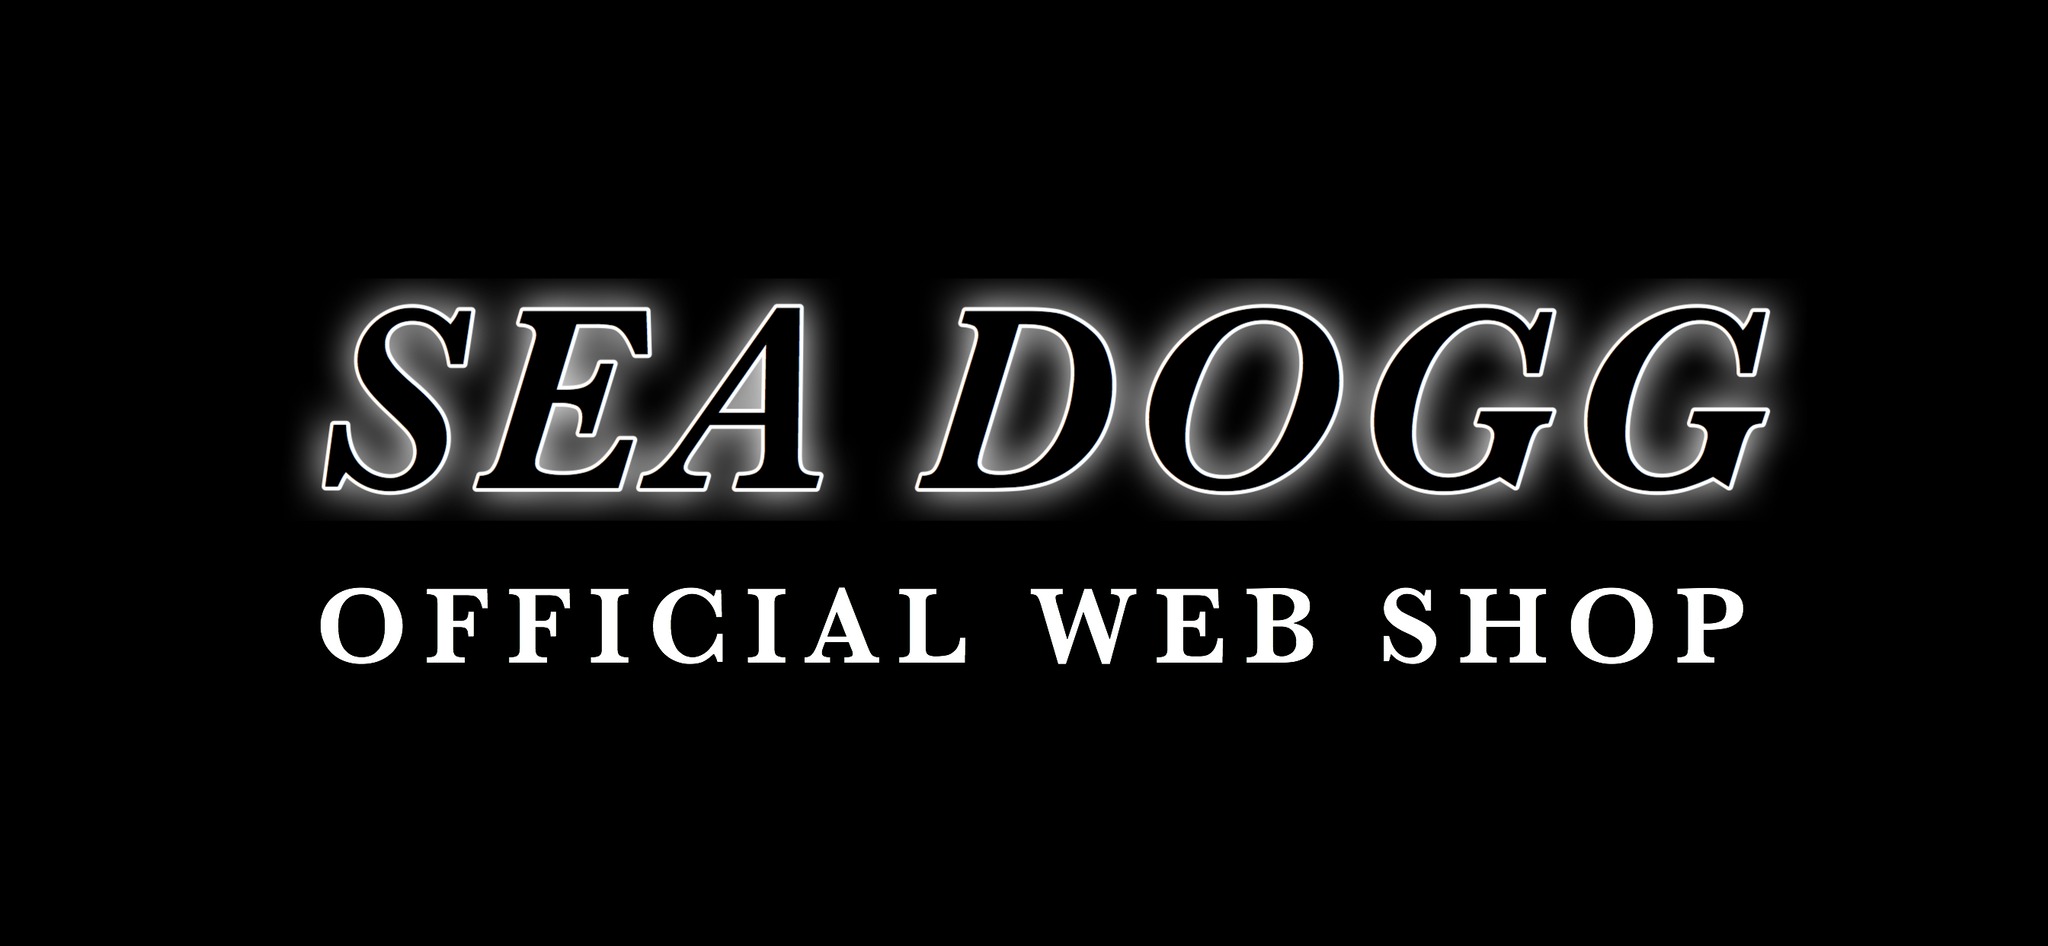 SEA DOGG OFFICIAL WEB SHOP